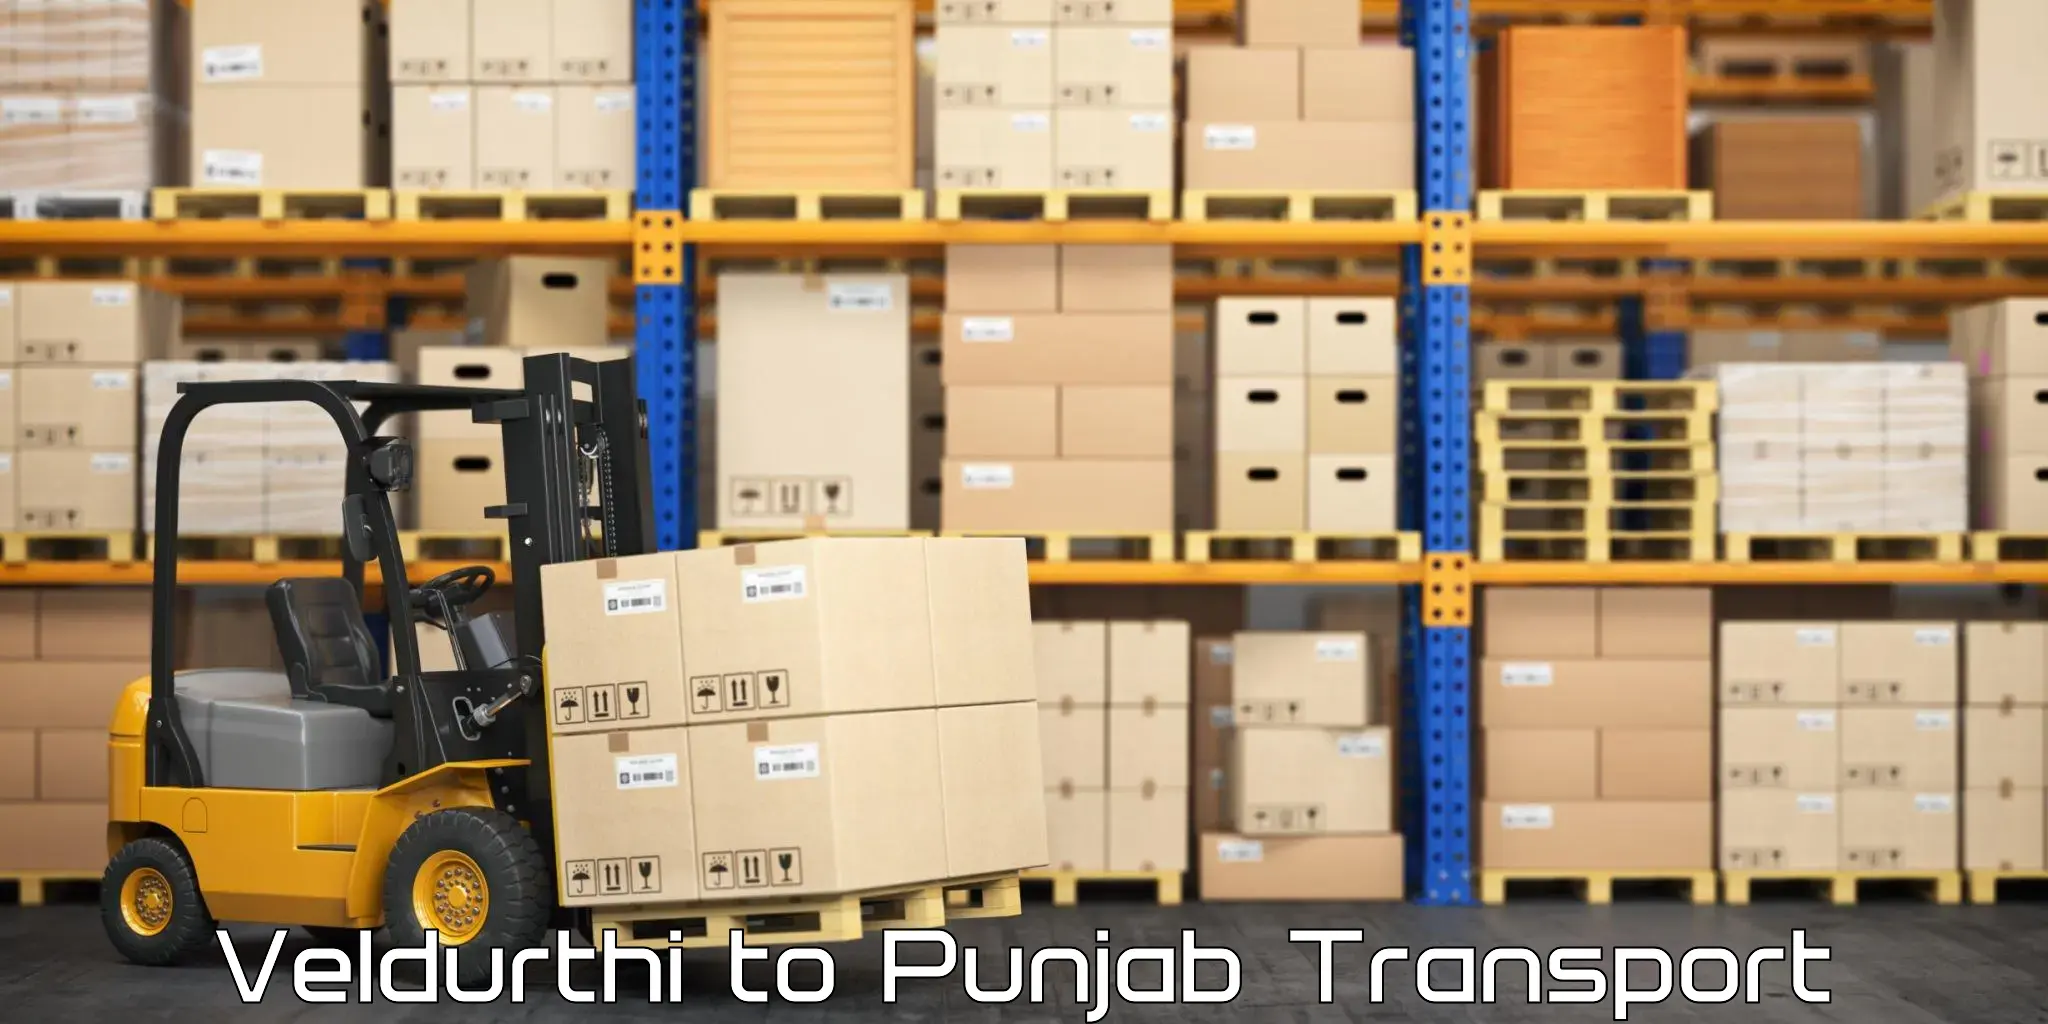 Luggage transport services Veldurthi to Punjab